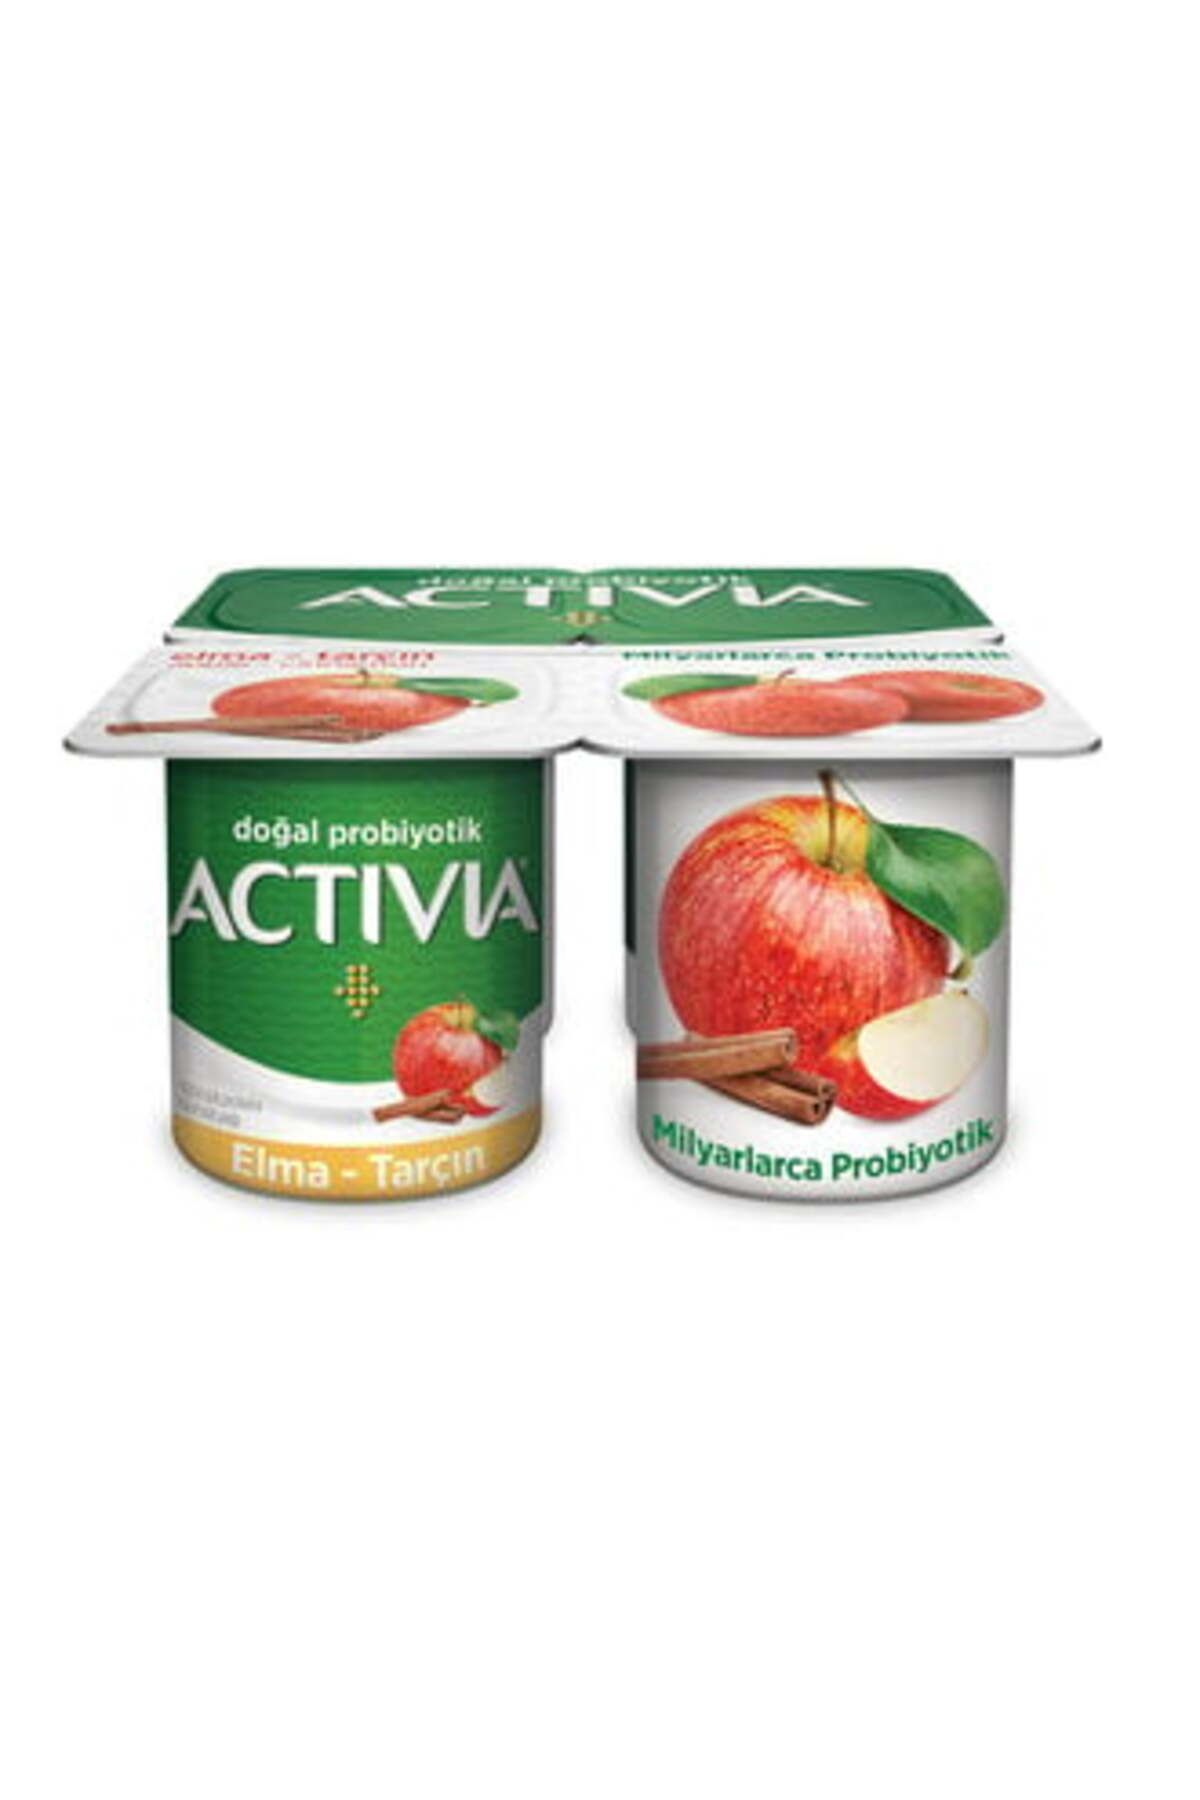 Danone Activia Tarçın Elma Probiyotik Yoğurt 4x100 g ( 2 ADET )